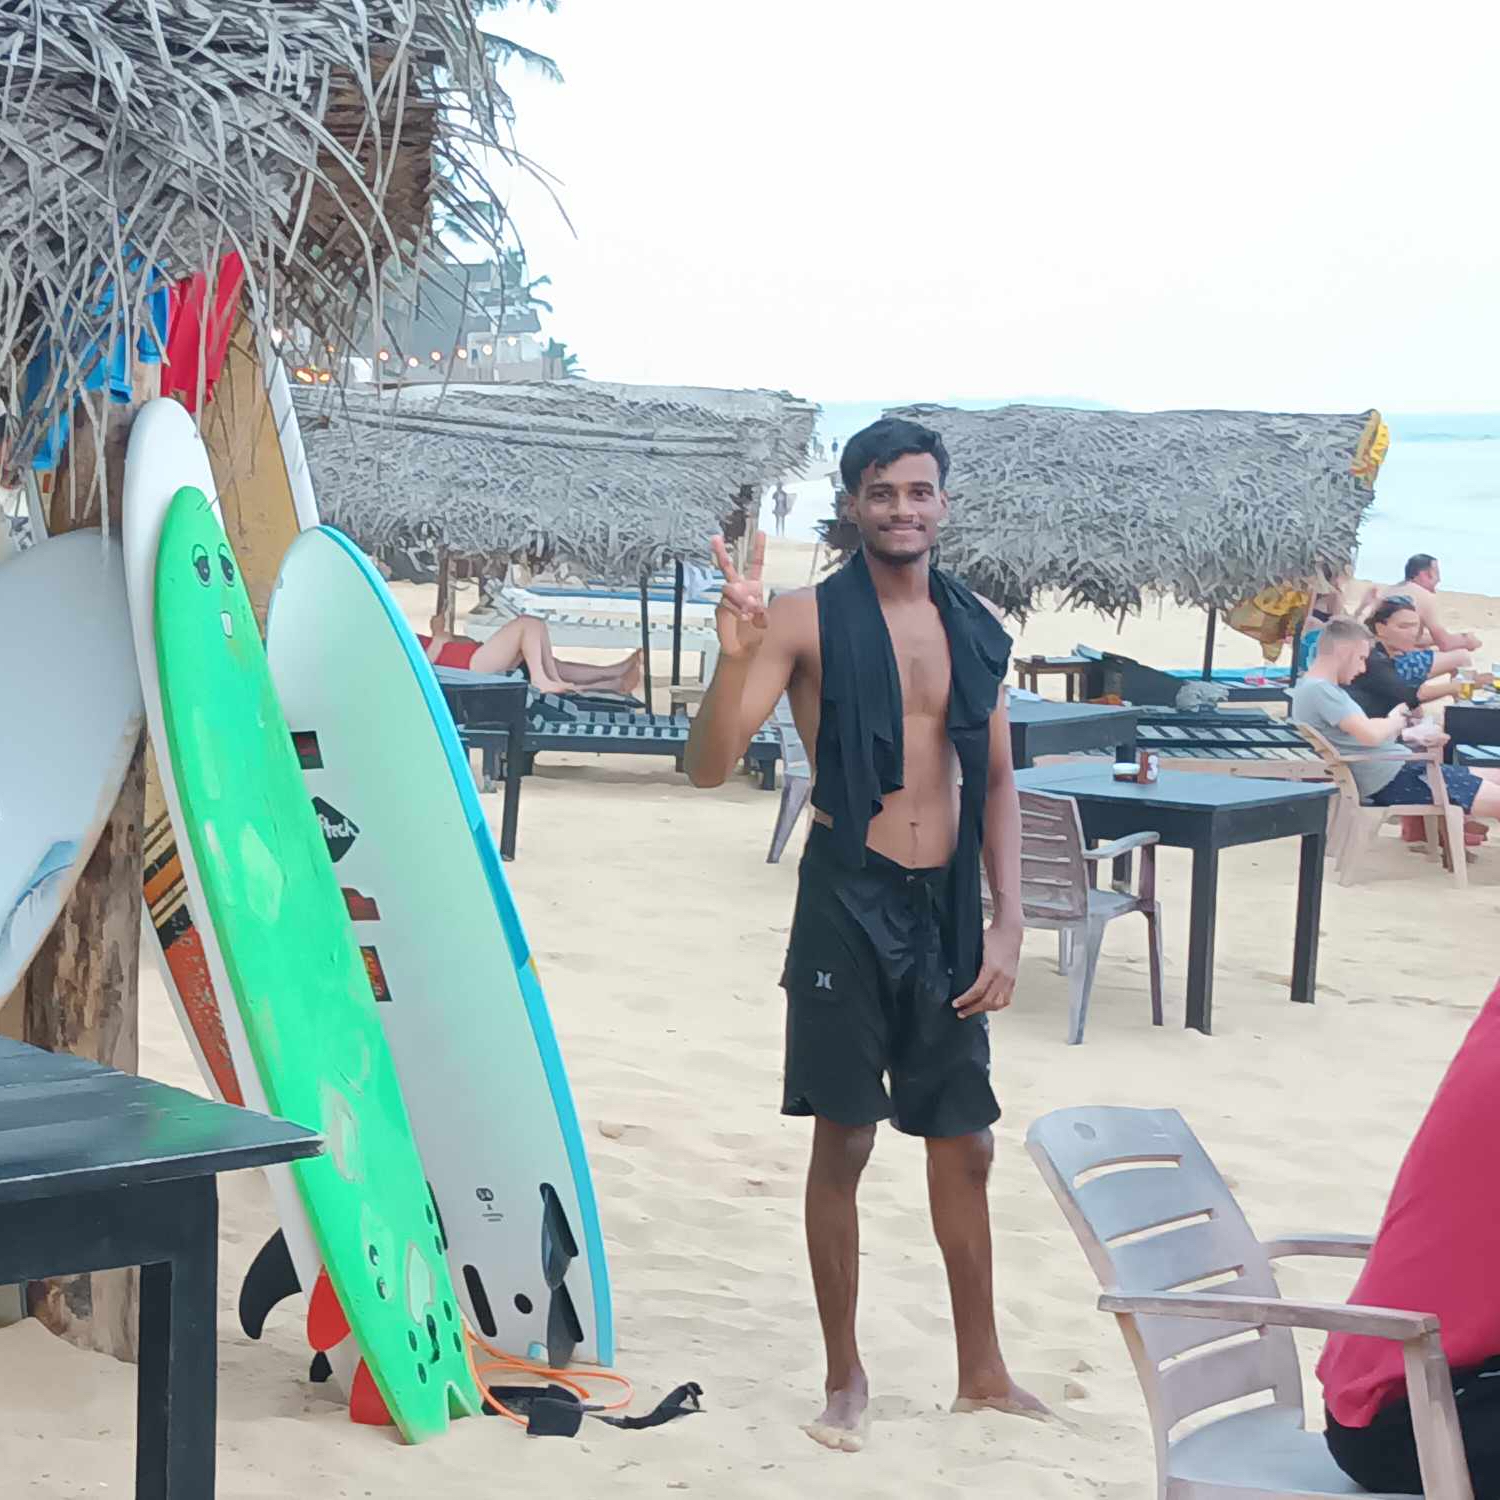 En bild på surfbrädor uppställda på stranden och en ung man i badbyxor.